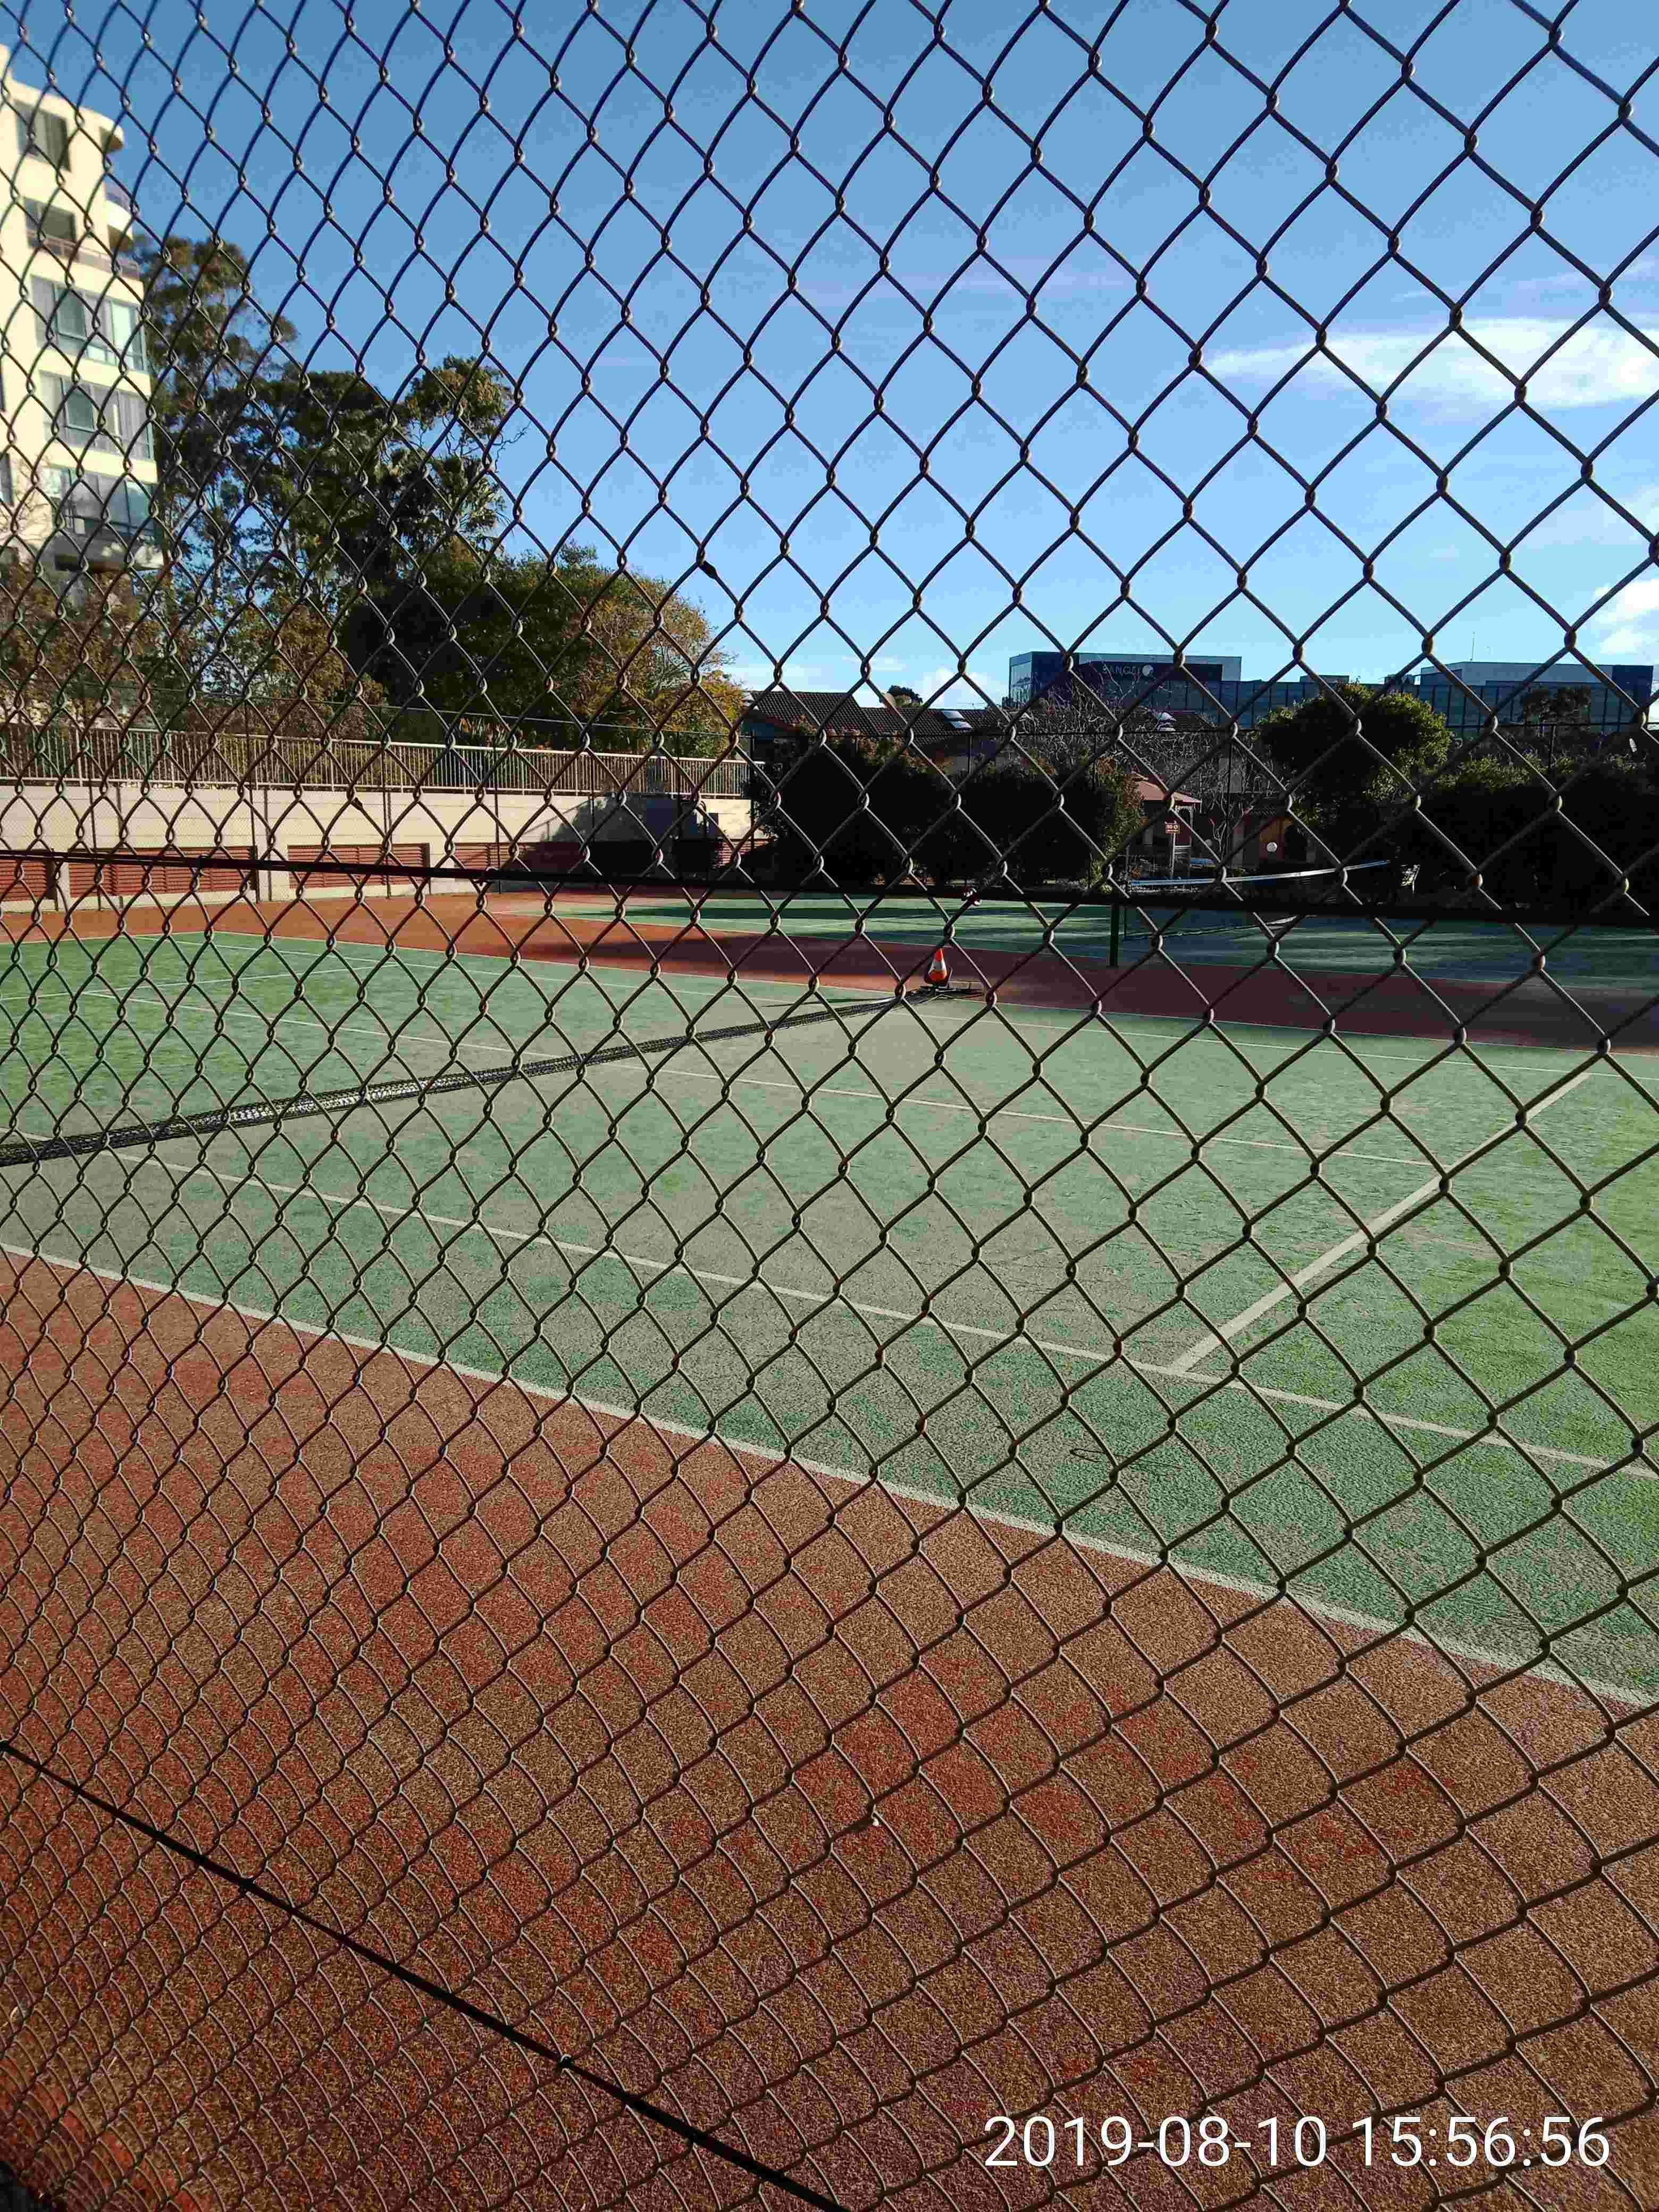 SP52948-tennis-court-2-damage-10Aug2019.jpg